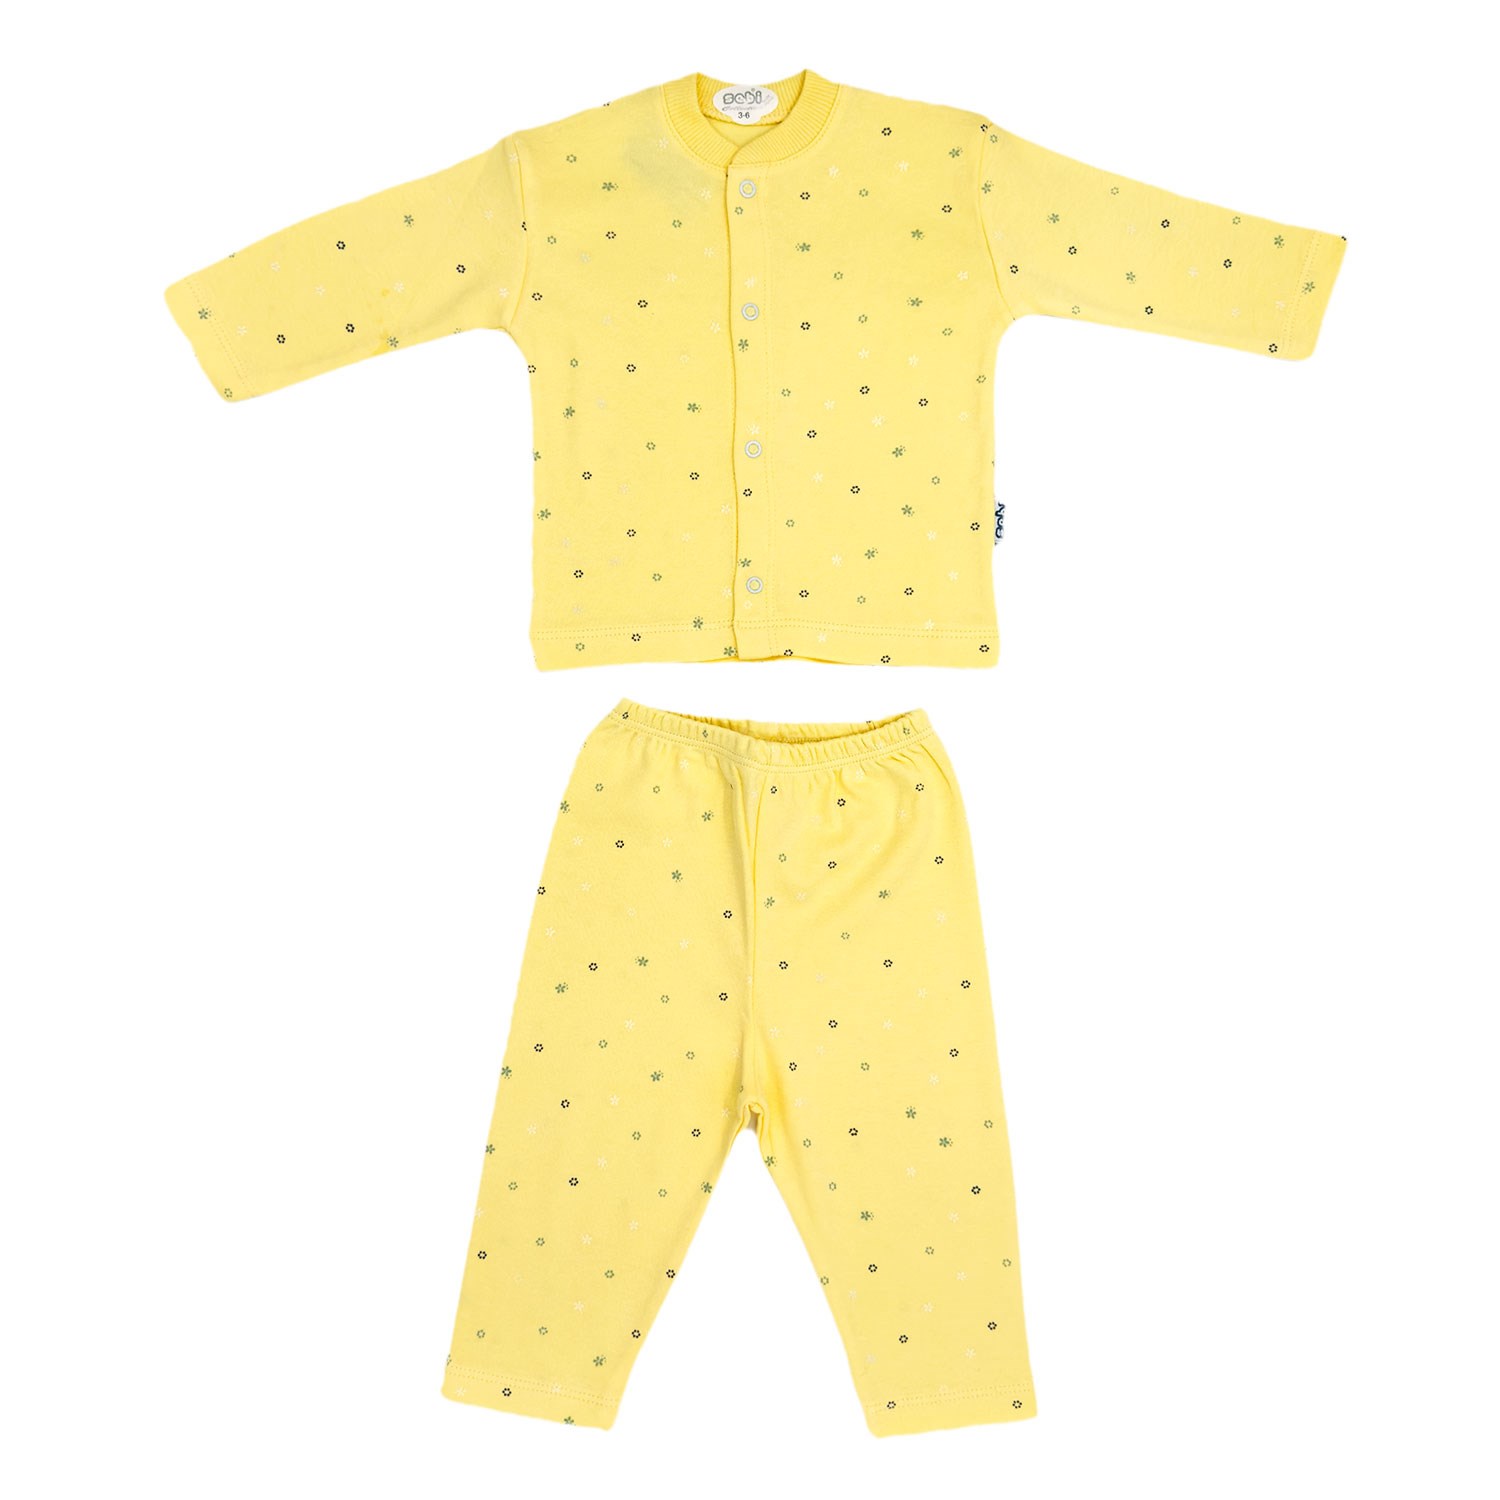 Sebi Bebe Ay Yıldız Baskılı Bebek Pijama Takımı 2331 Sarı